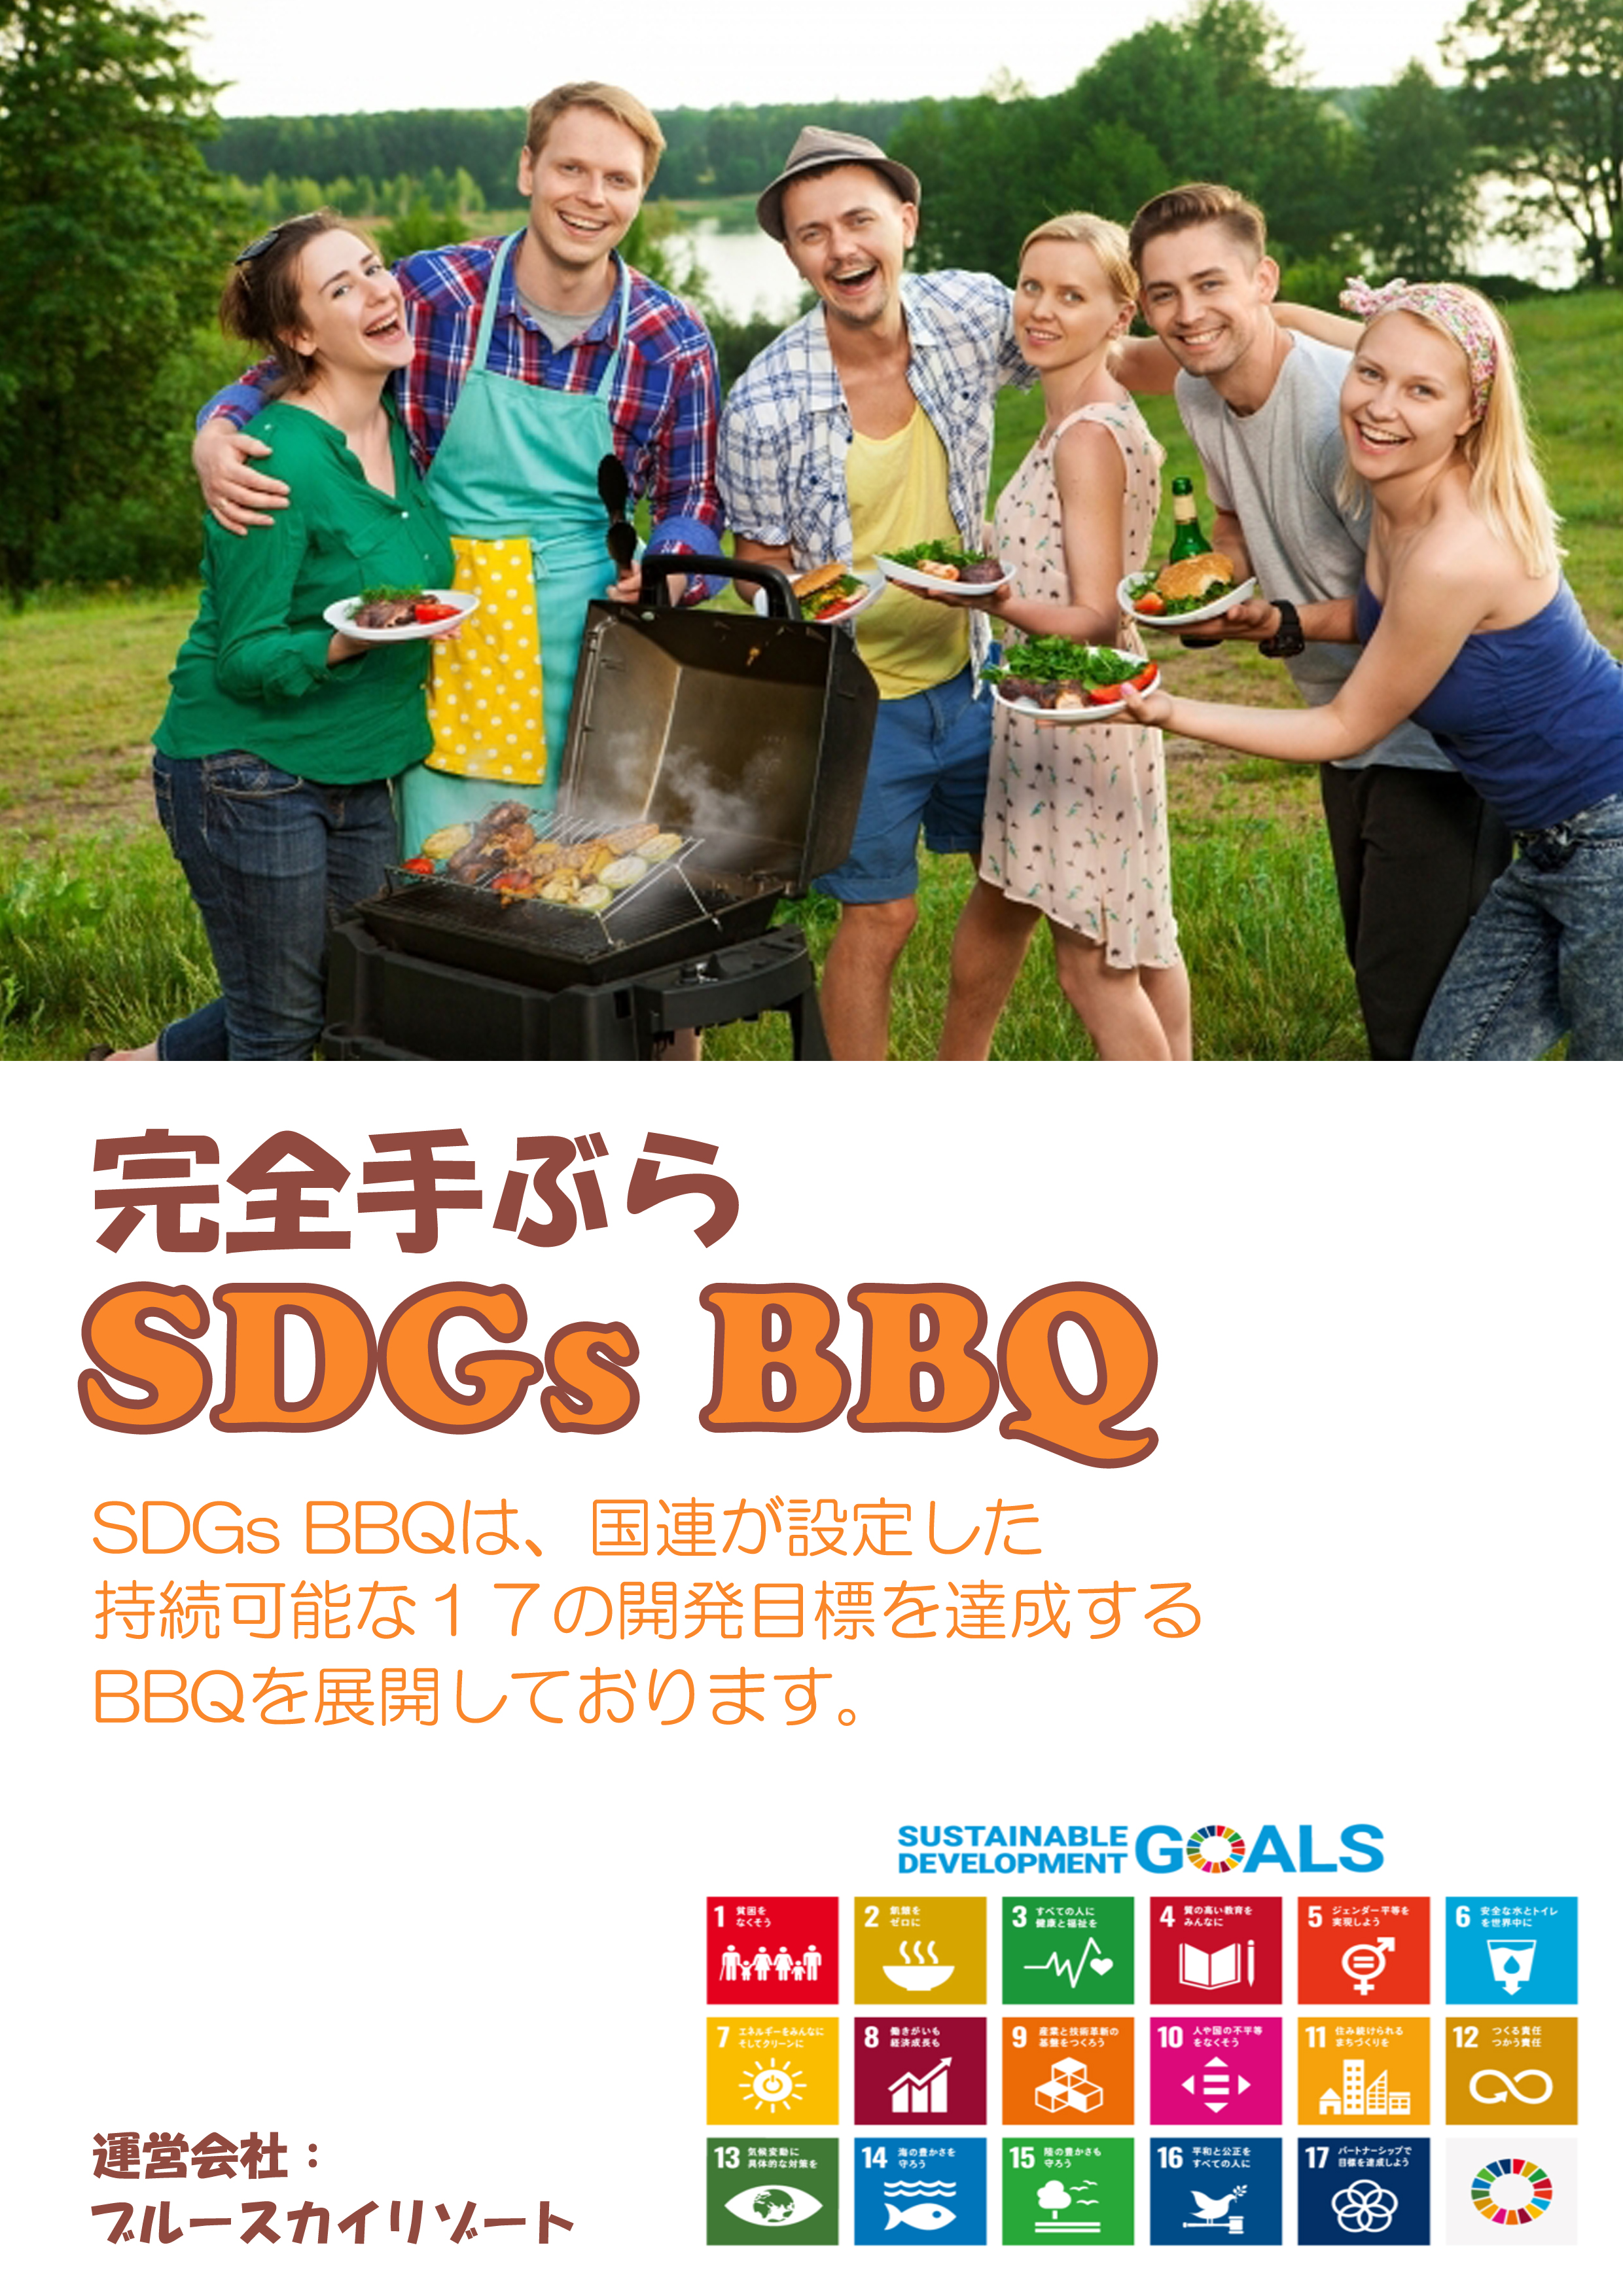 SDGs BBQ 完全手ぶら！アメリカンスタイルSDGs BBQをわいわい満喫しよう！／ブルースカイリゾート(Blue Sky Resort)